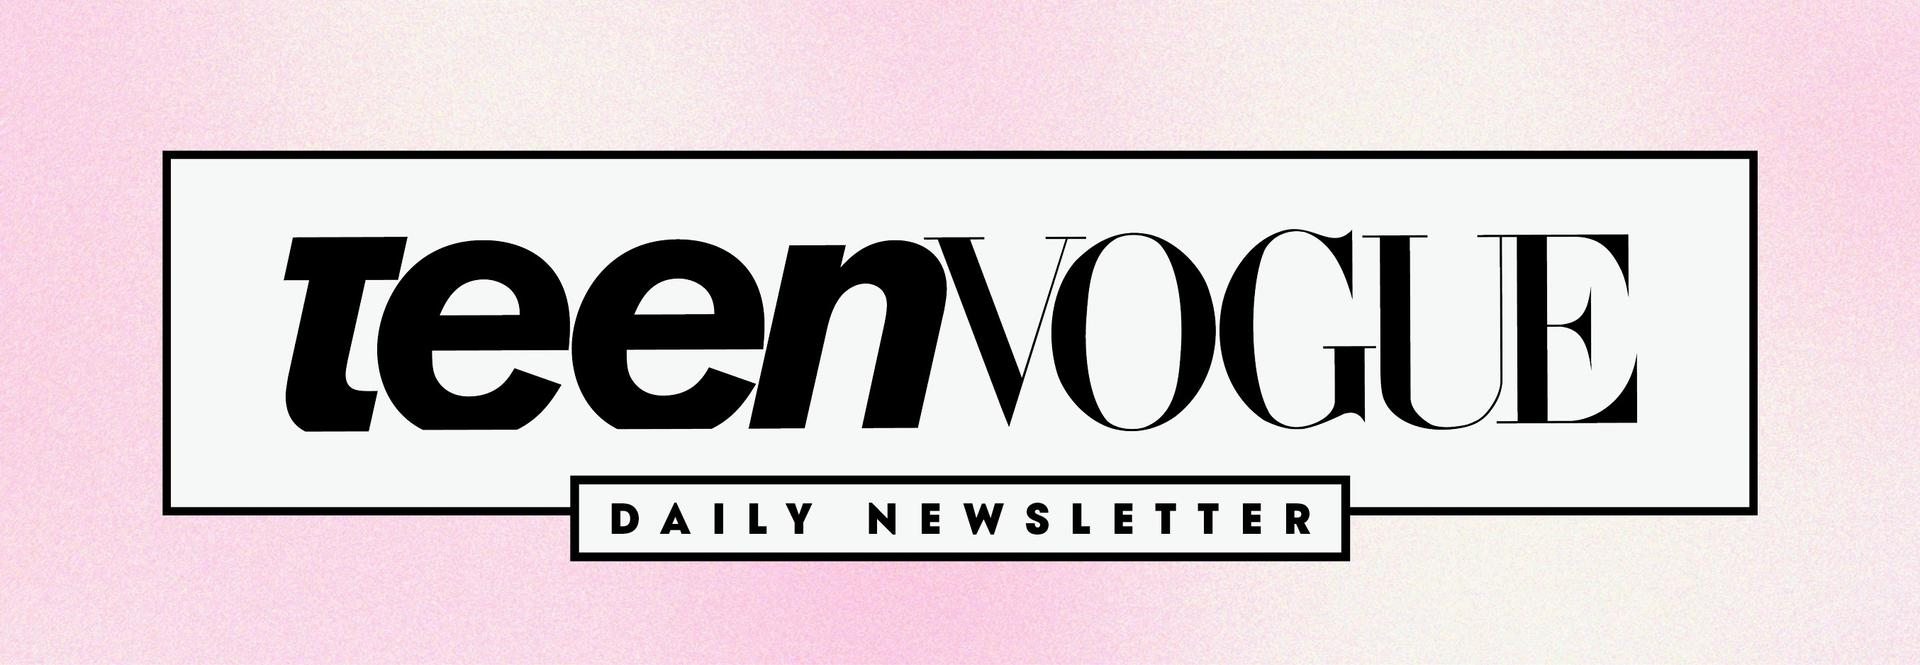 Teen Vogue Daily Newsletter logo